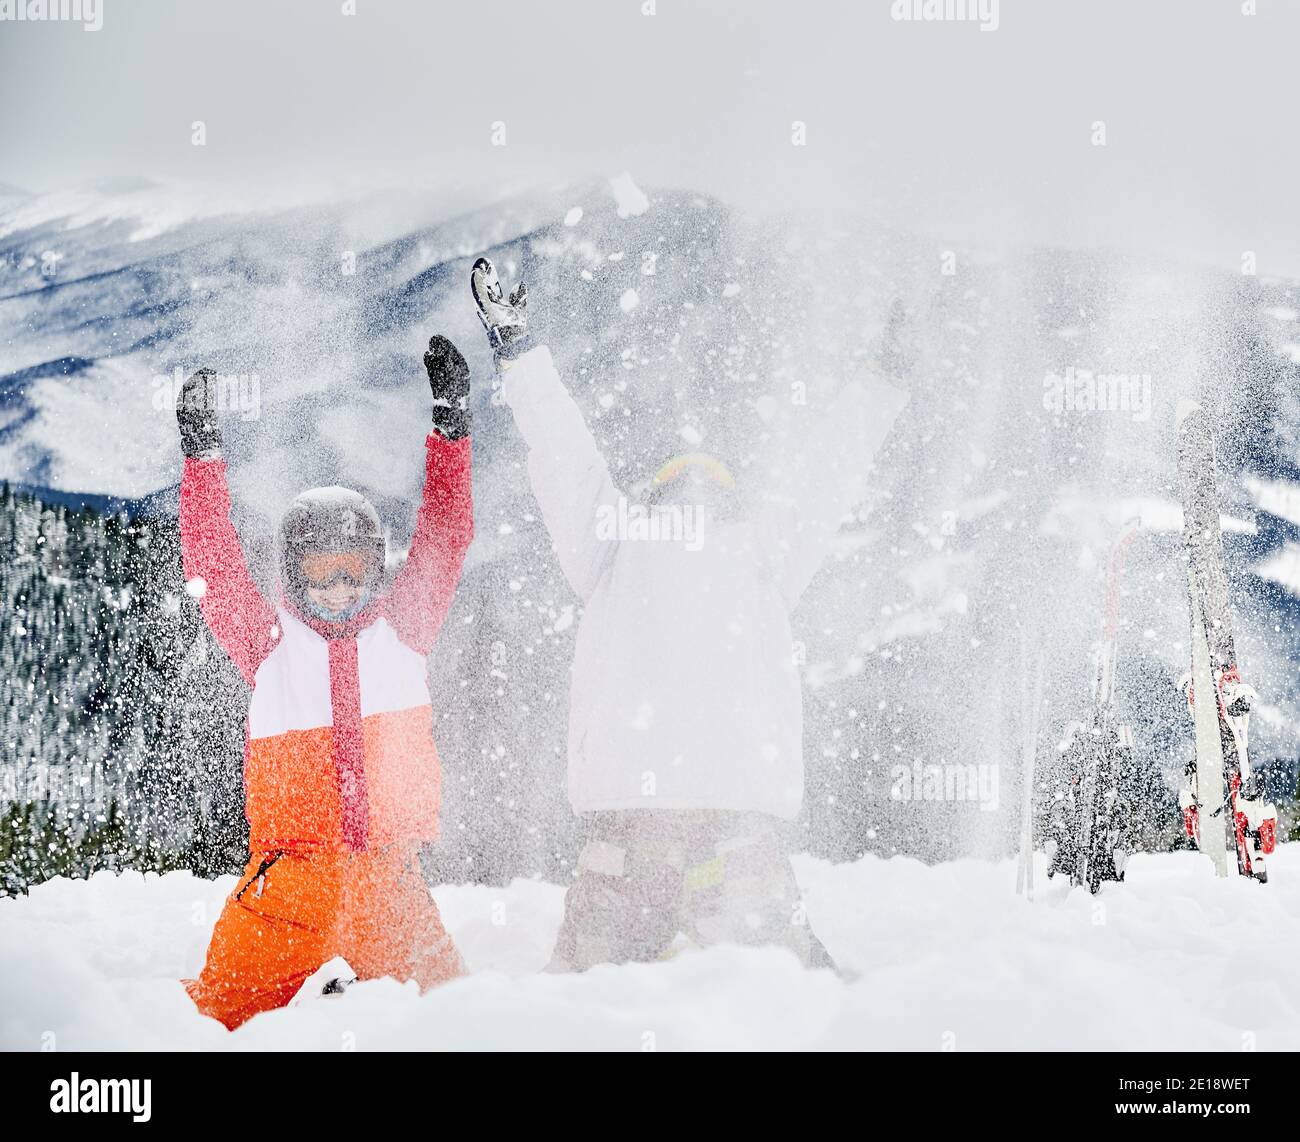 Zwei Skifahrer in Skianzügen und Helmen werfen frischen Pulverschnee hoch in die Luft, Spaß im Skigebiet mit Bergen im Hintergrund. Konzept der Wintersport-Aktivitäten, Spaß und Beziehungen. Stockfoto